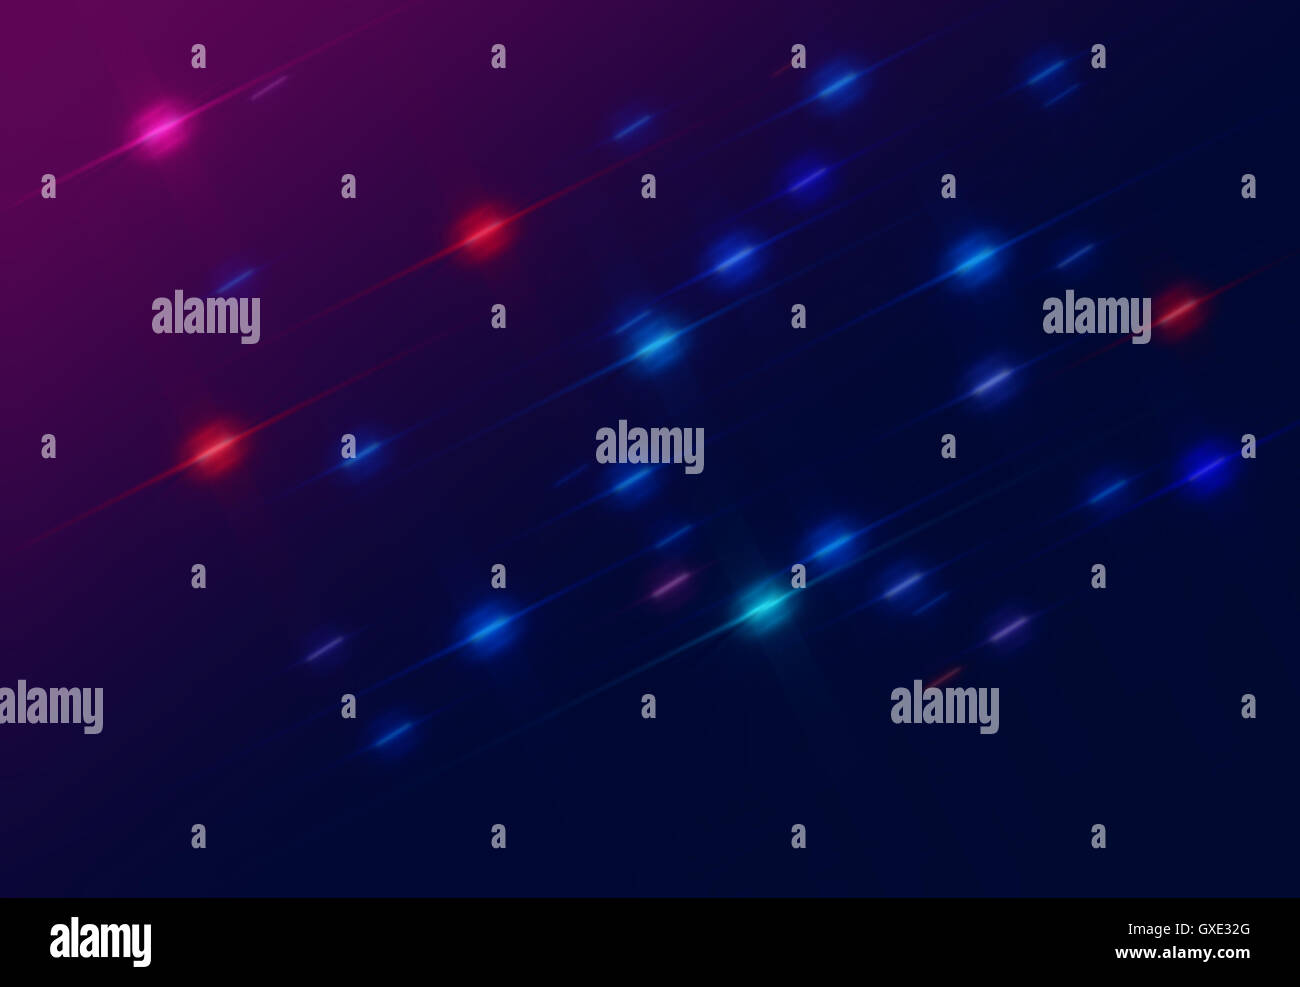 Spazio astratto sfondo stellato illustrazione composta da stilizzata battenti variegata di rosso, blu e viola stelle (luci) Foto Stock